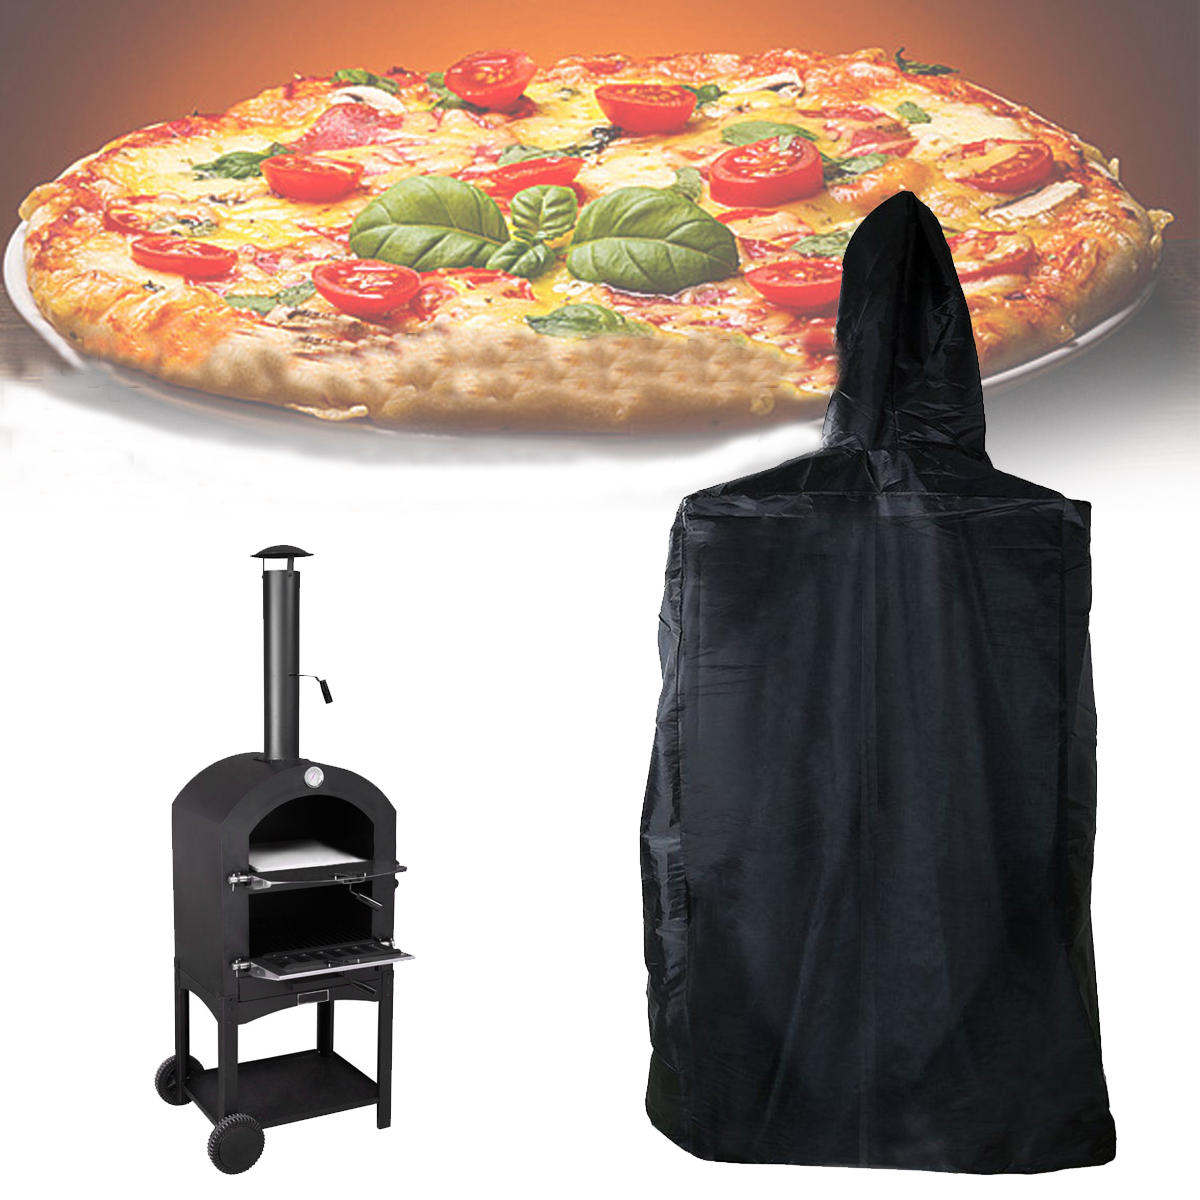 Hoes voor buitenpizza-oven van 160x37x50cm, waterdicht, stof- en UV-bestendig.